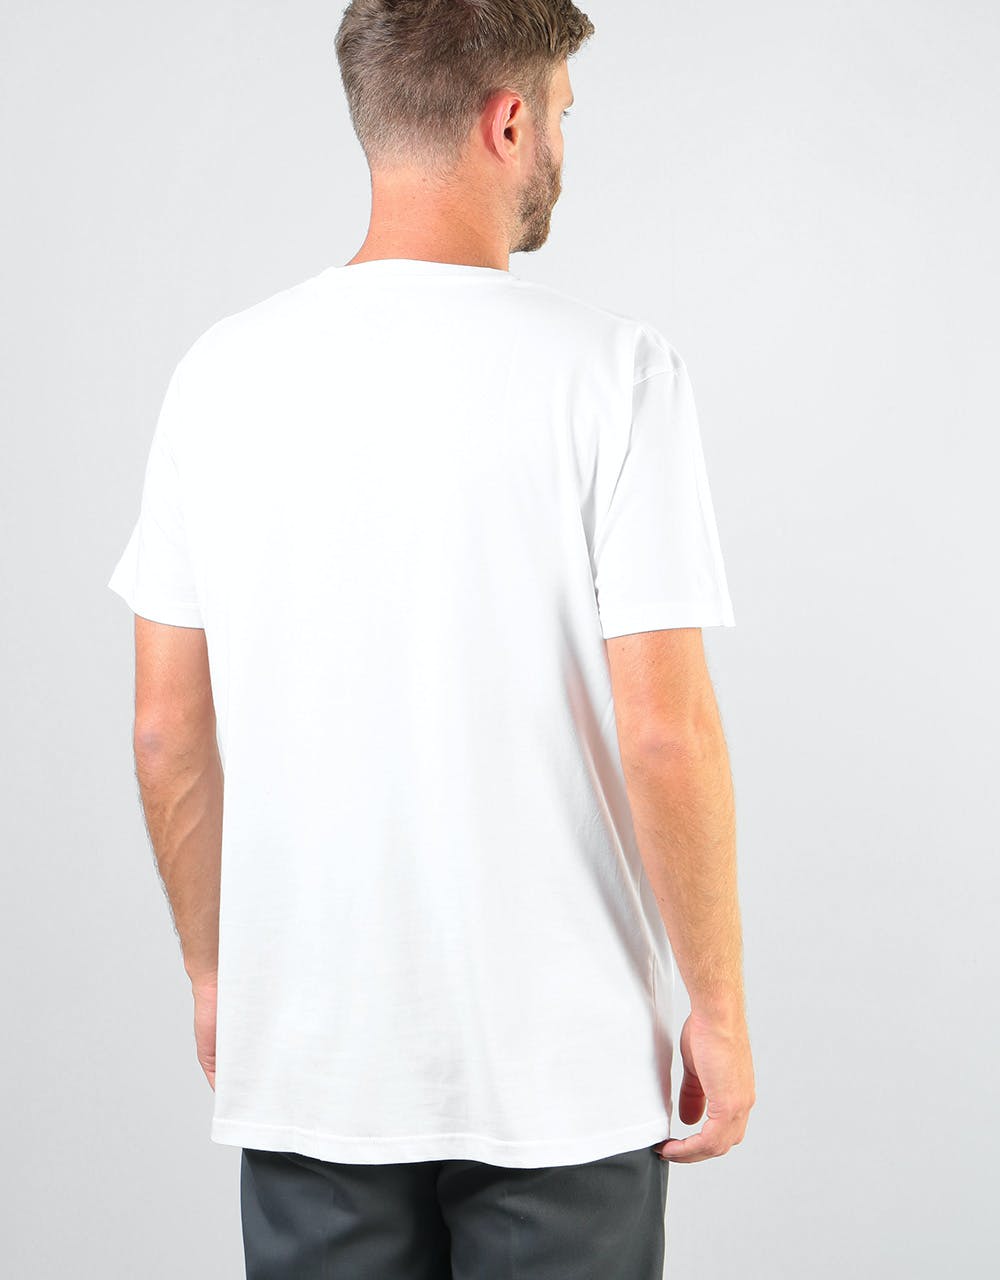 Magenta Zebra T-Shirt - White